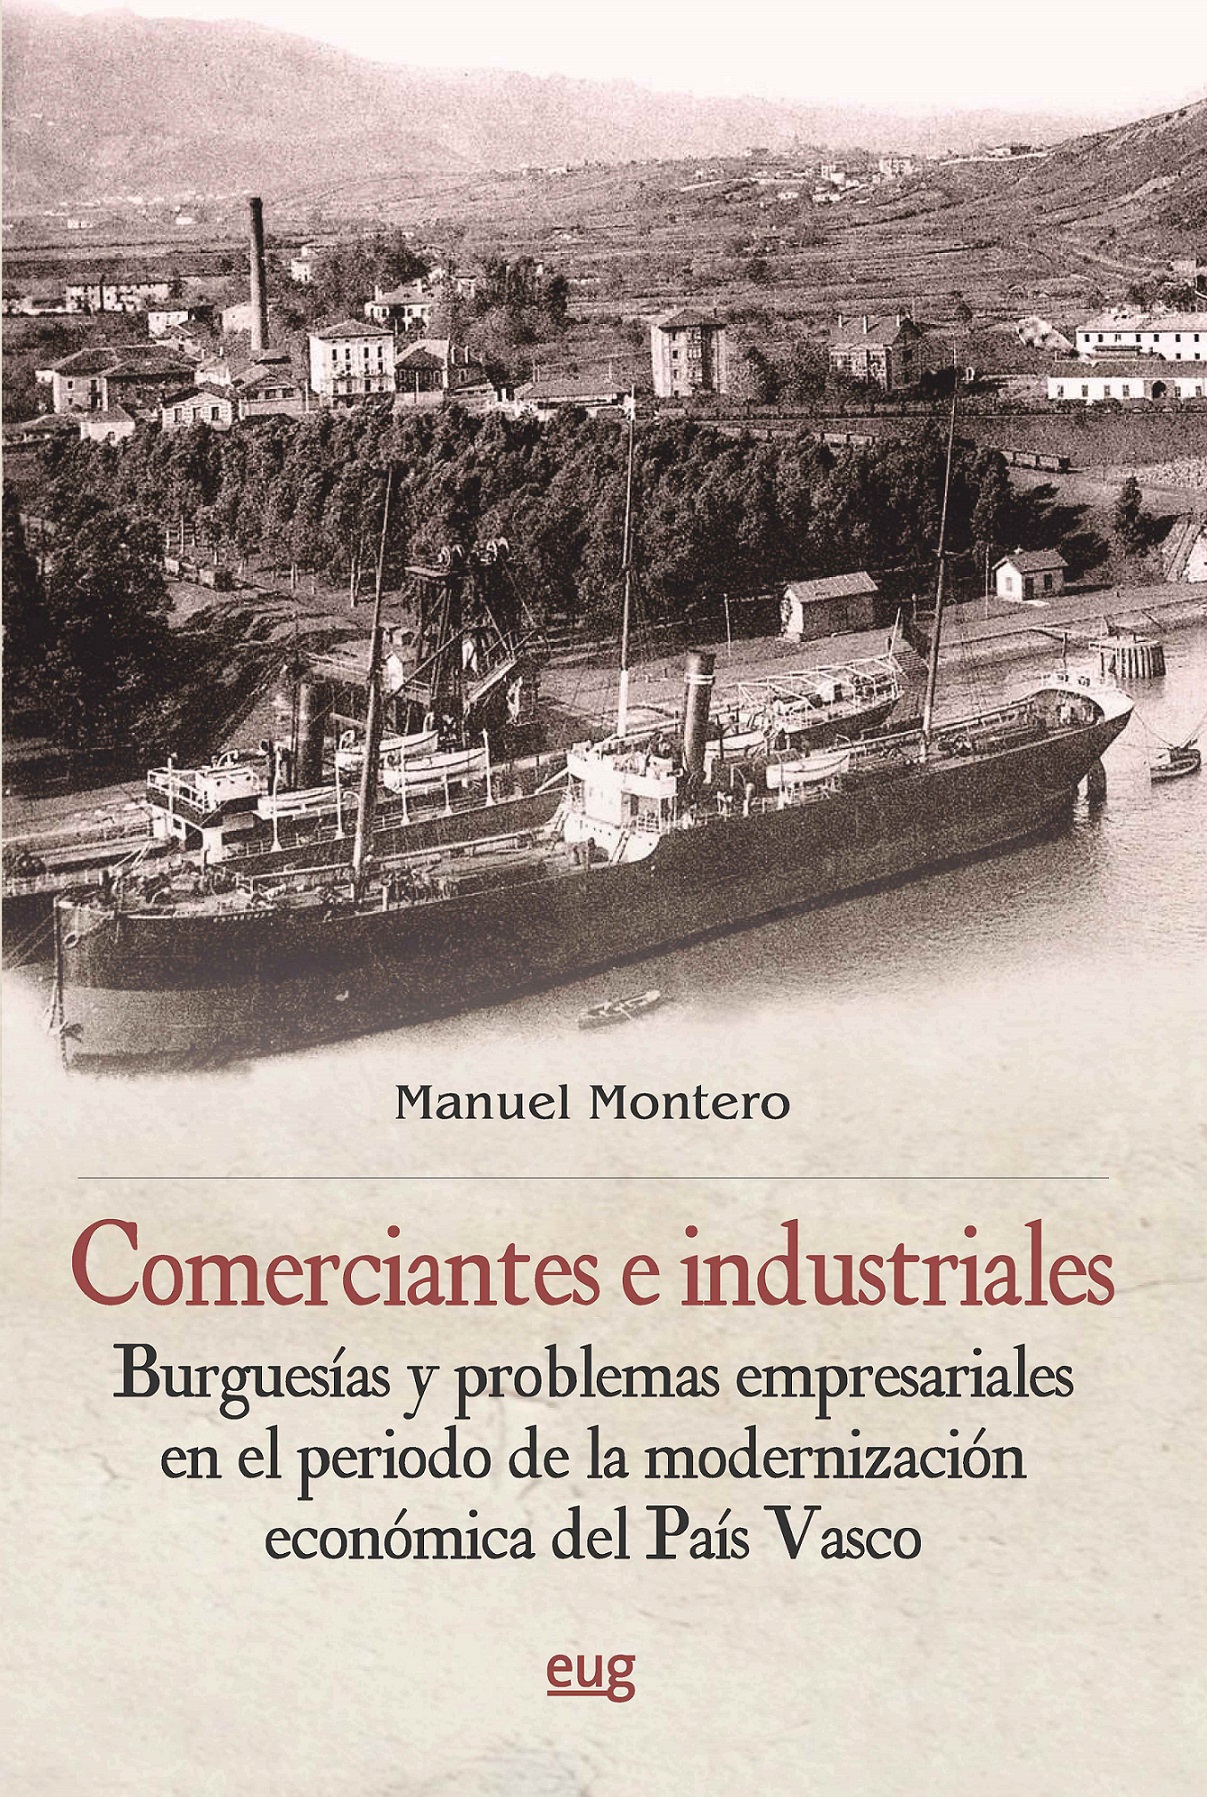 Imagen de portada del libro Comerciantes e industriales